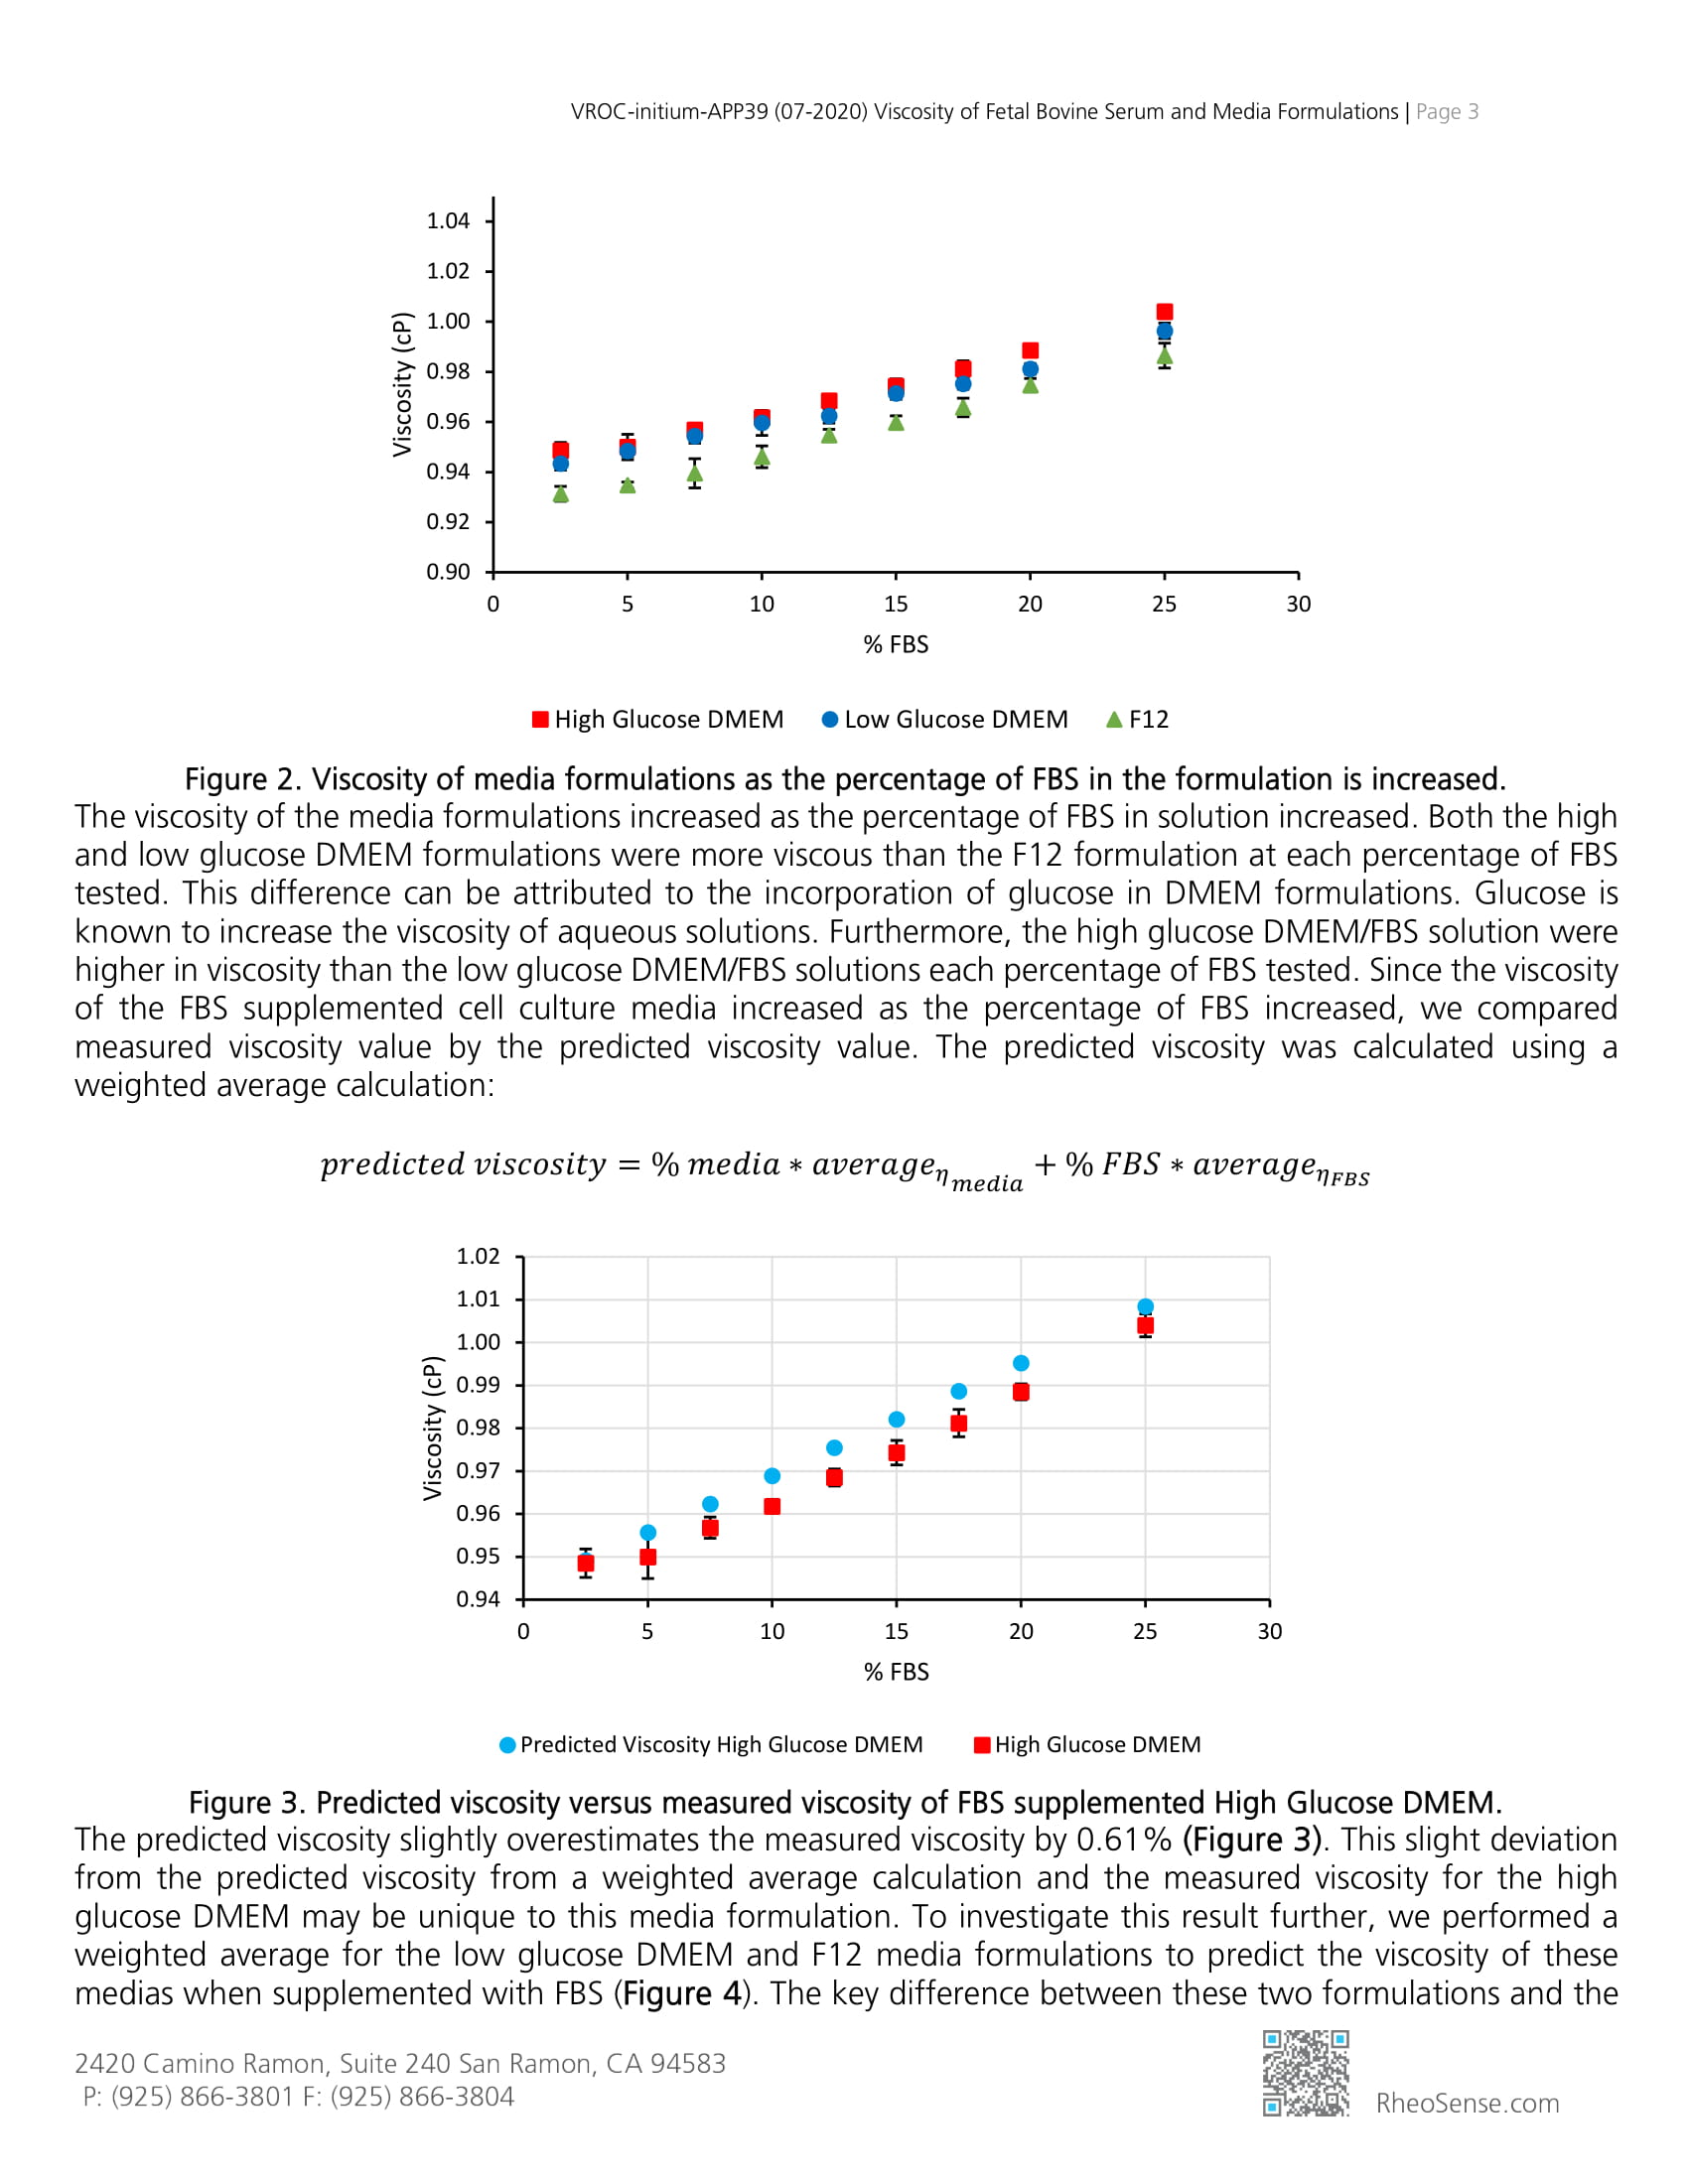 VROC-initium-APP 39 (07-2020) Viscosity of Fetal Bovine Serum and Media Formulations-3.jpg